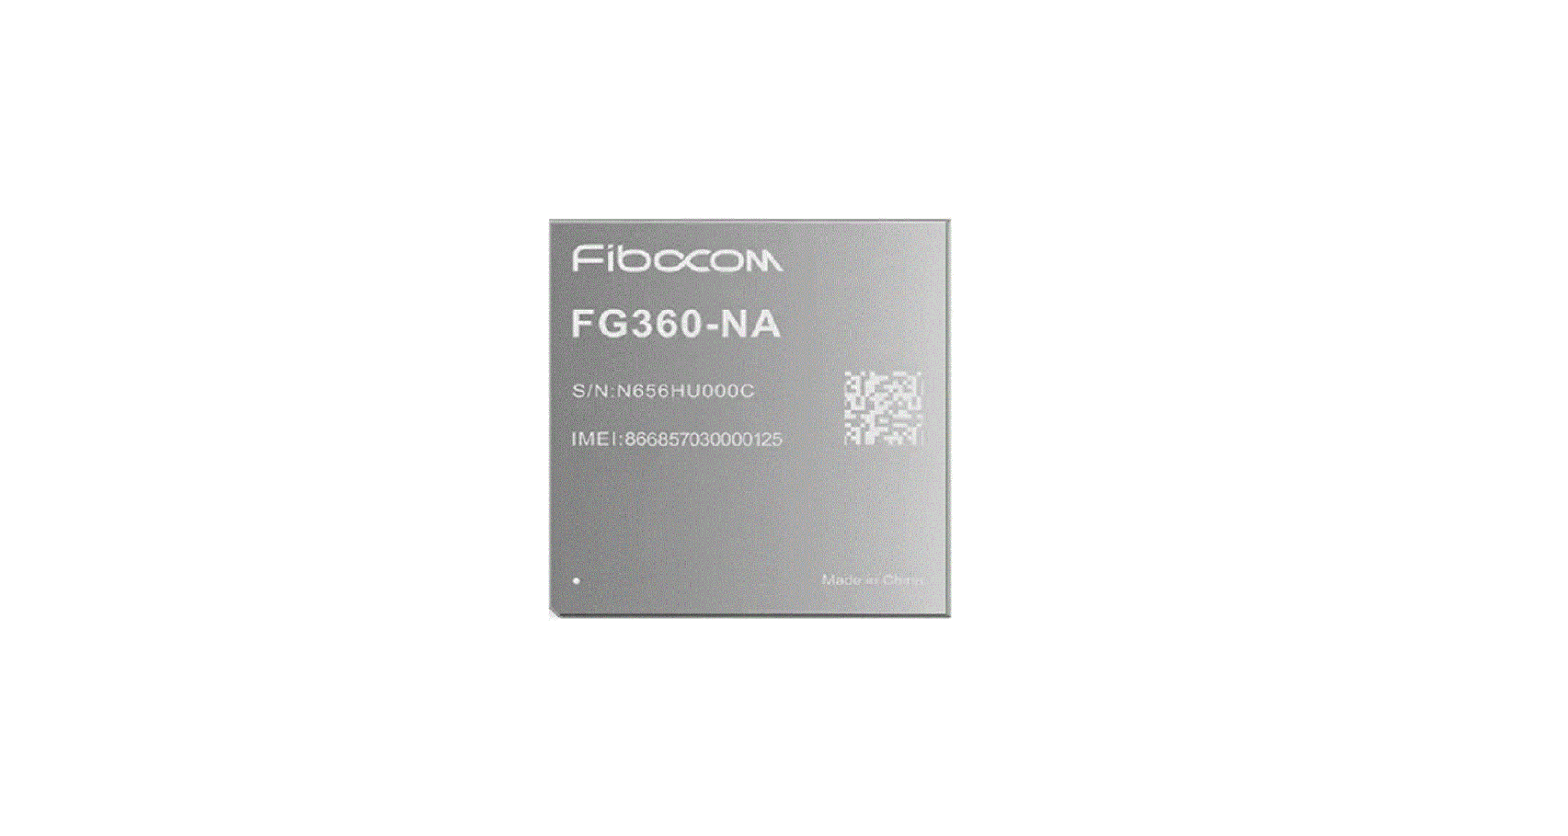 FG360-NA